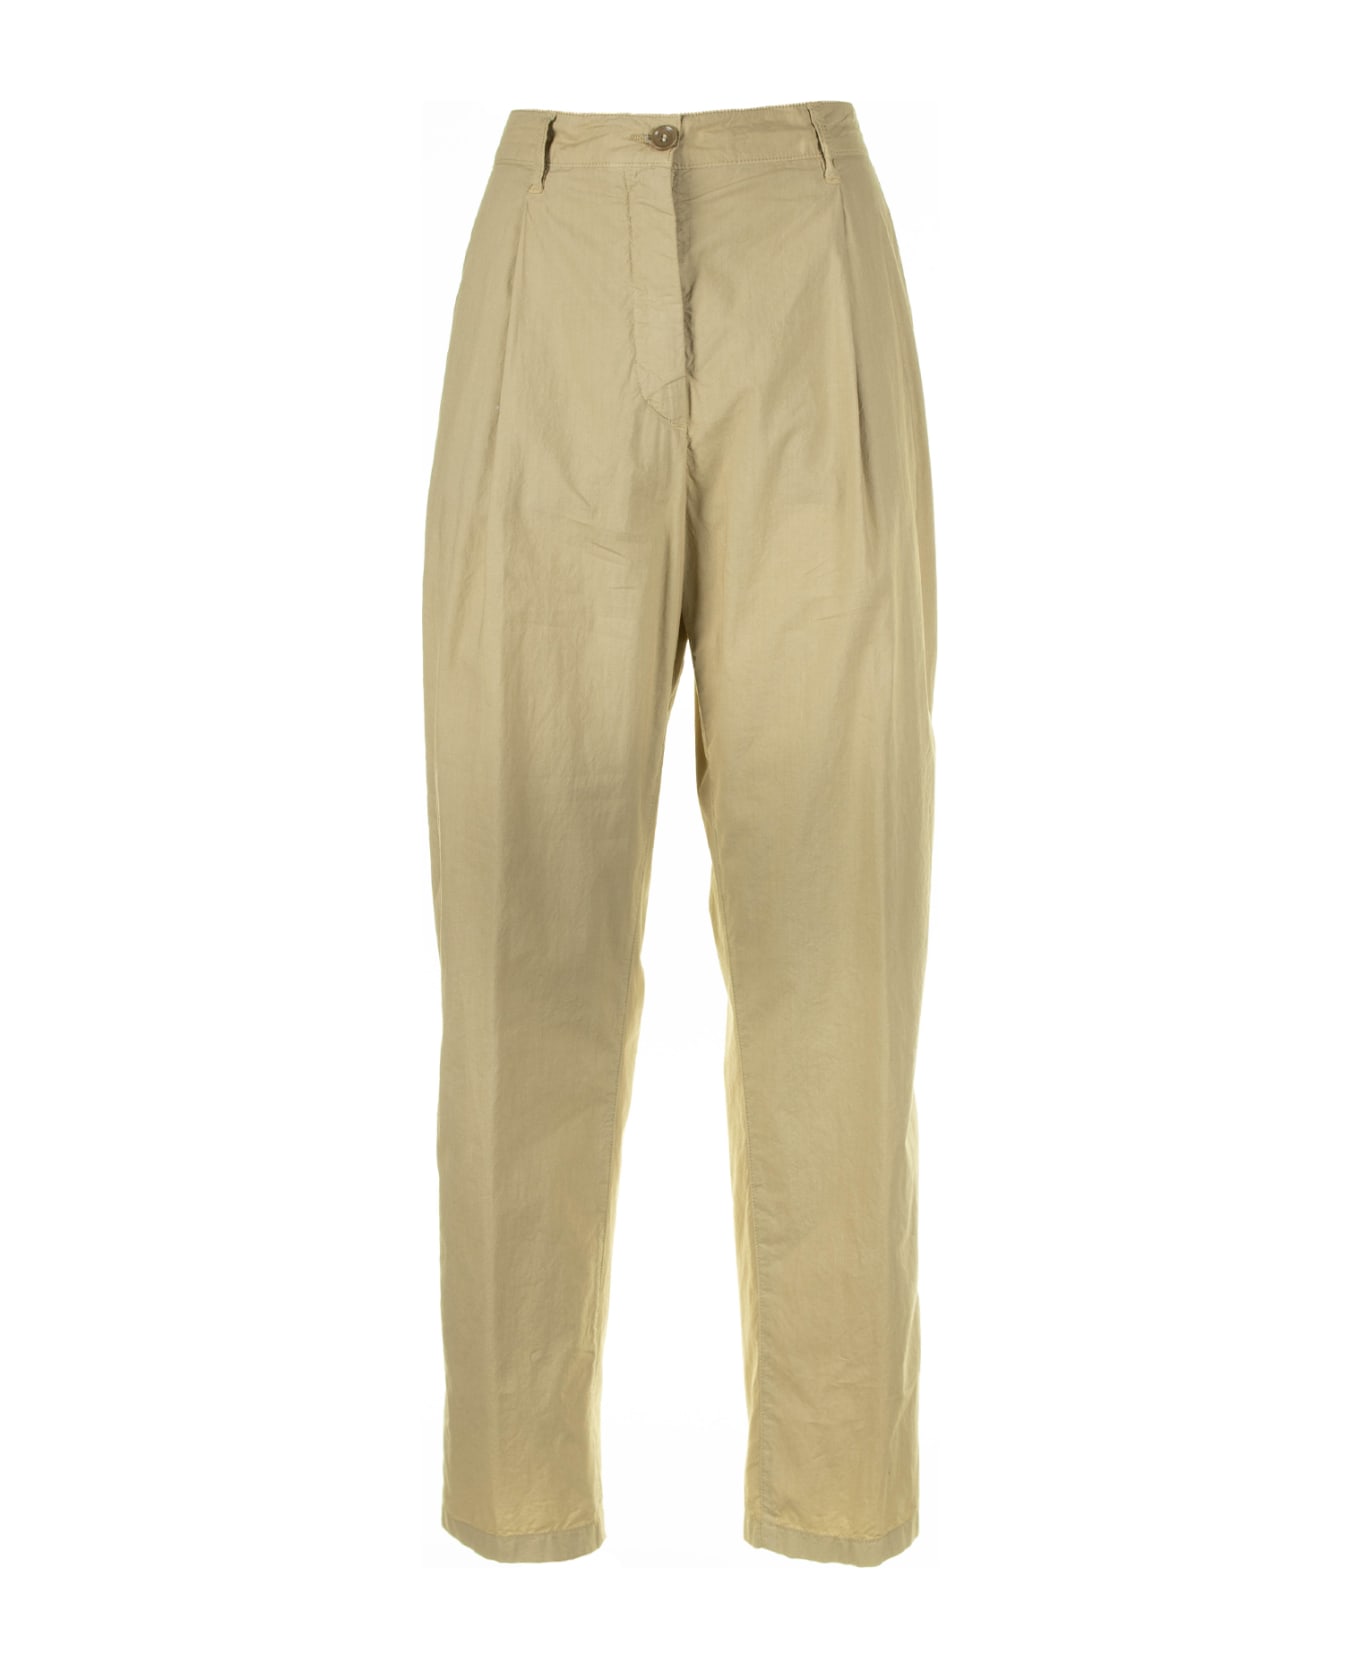 Aspesi Beige High-waisted Trousers - COLONIALE BEIGE